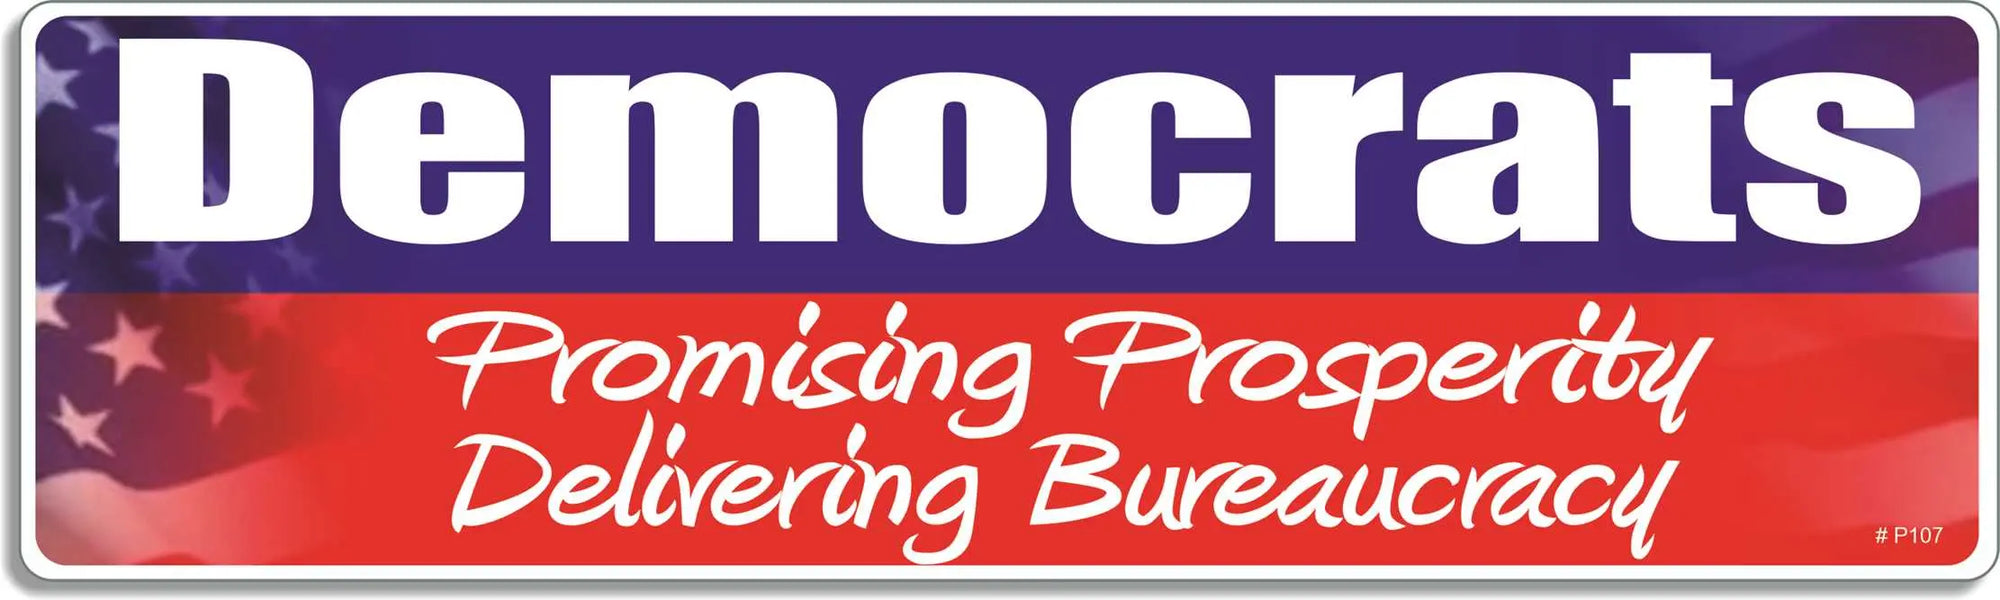 DEMOCRATS: Promising Prosperity, Delivering Bureaucracy - Conservative Bumper Sticker, Car Magnet Humper Bumper